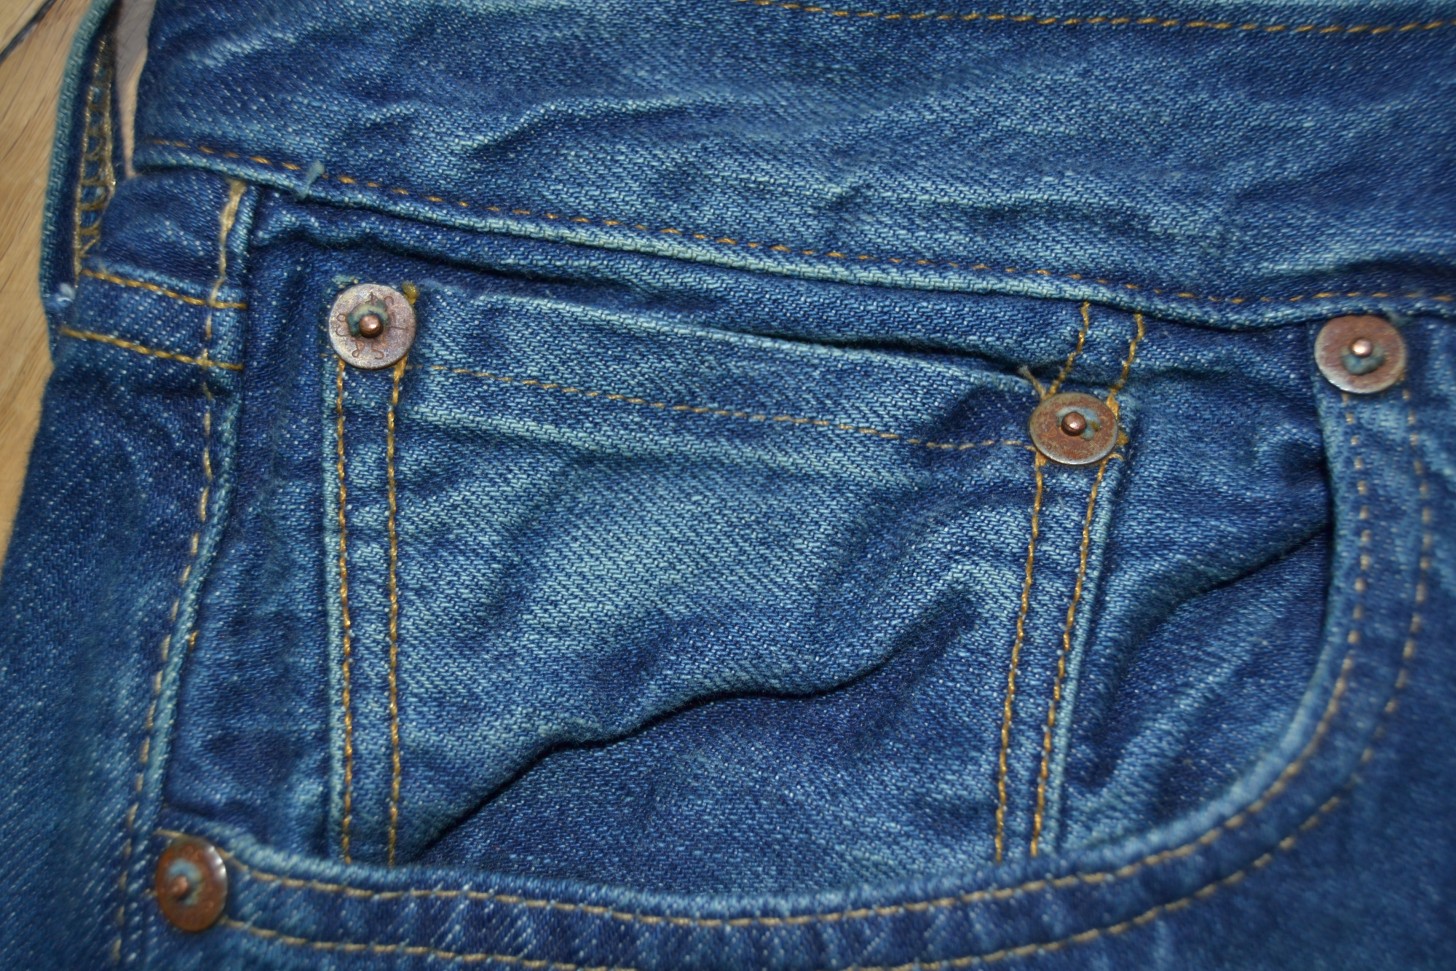 Карманы для джинсов